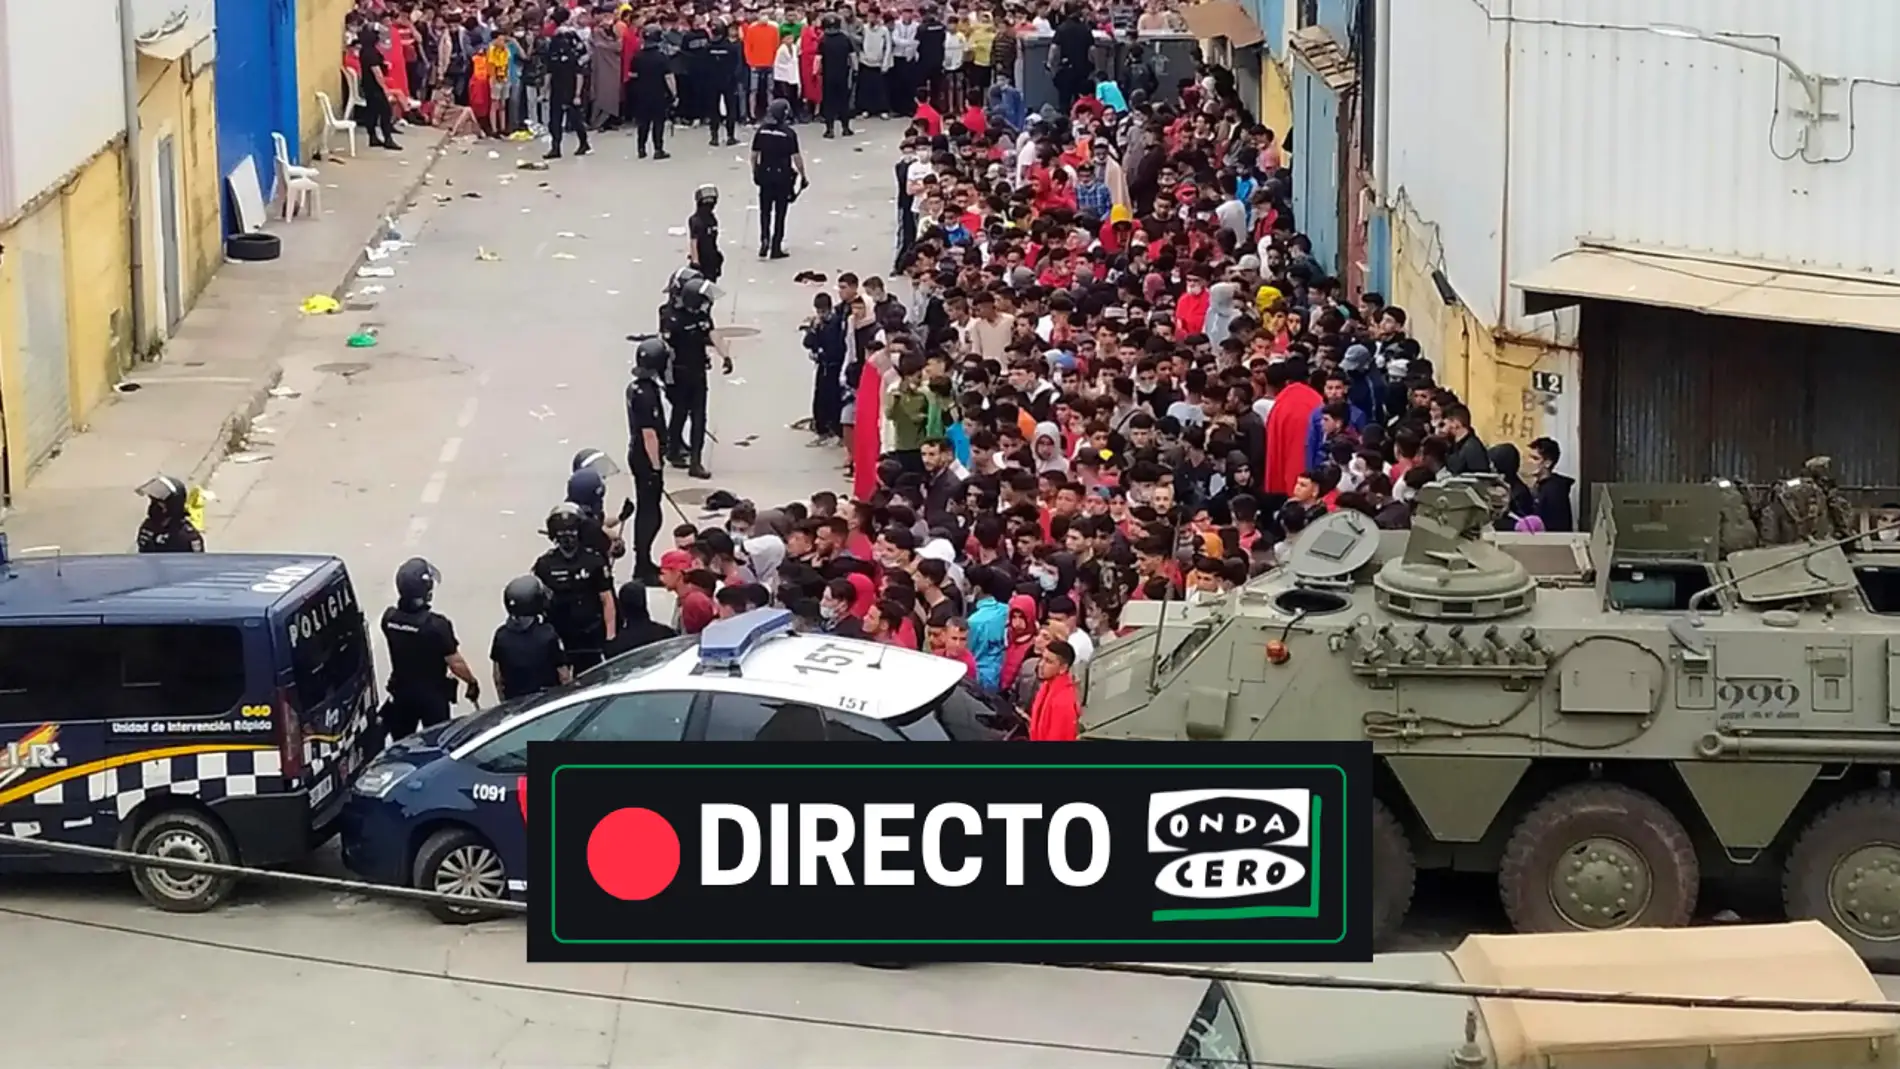 Noticias de Ceuta y Melilla, en directo: qué está pasando, crisis migratoria con Marruecos, y última hora hoy